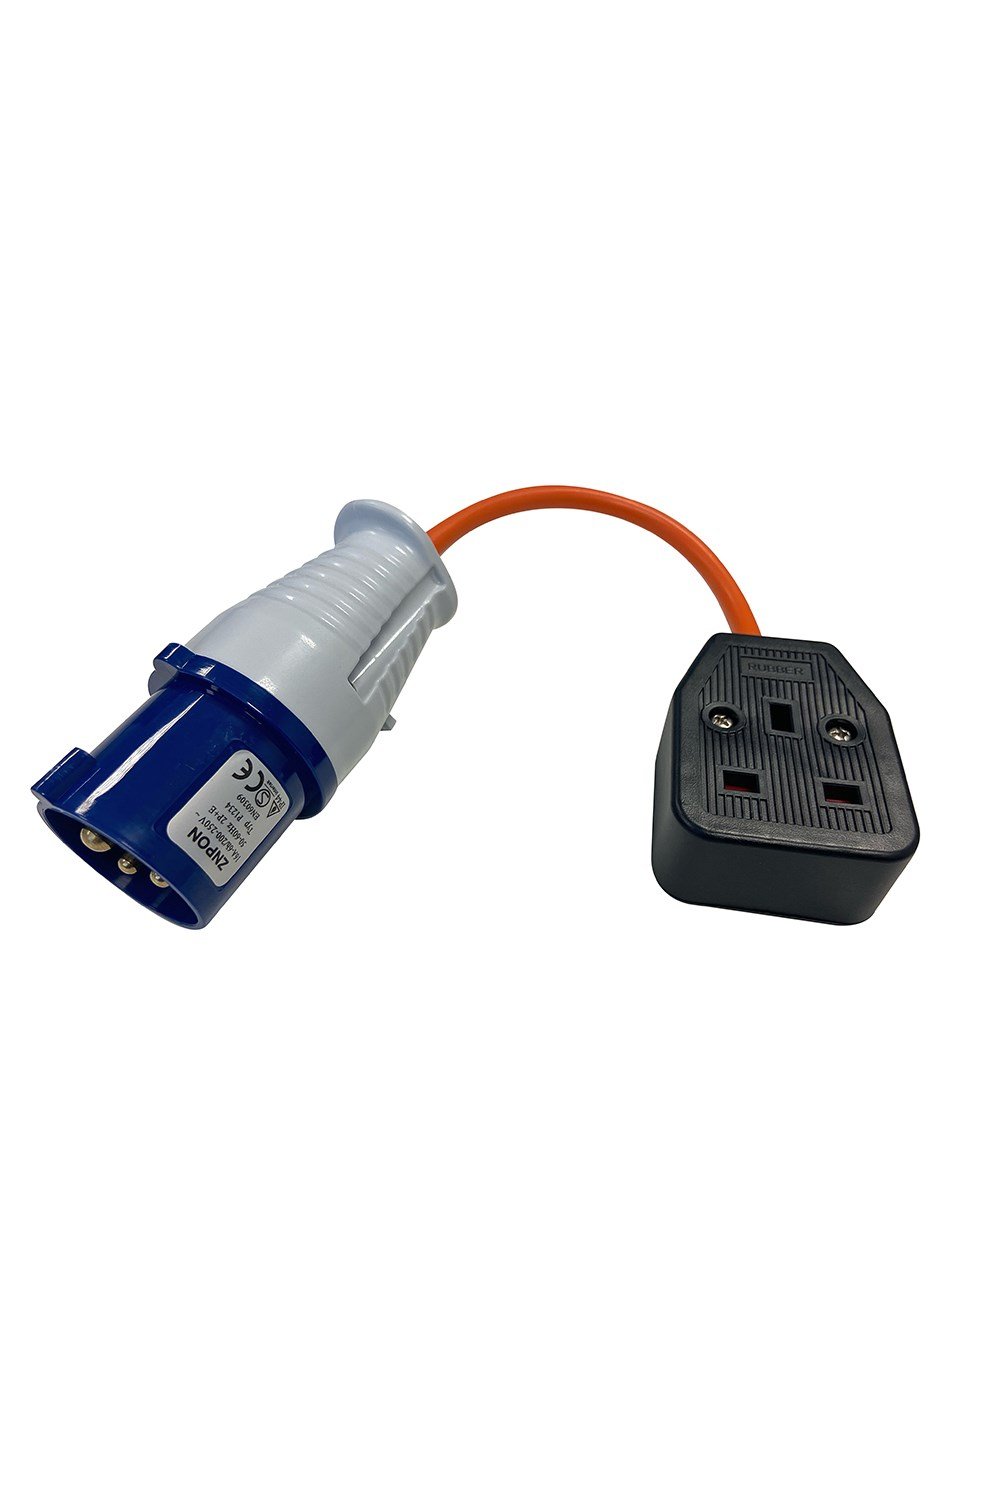 UK Mains Adaptor 13 Amp Socket to Caravan Plug -